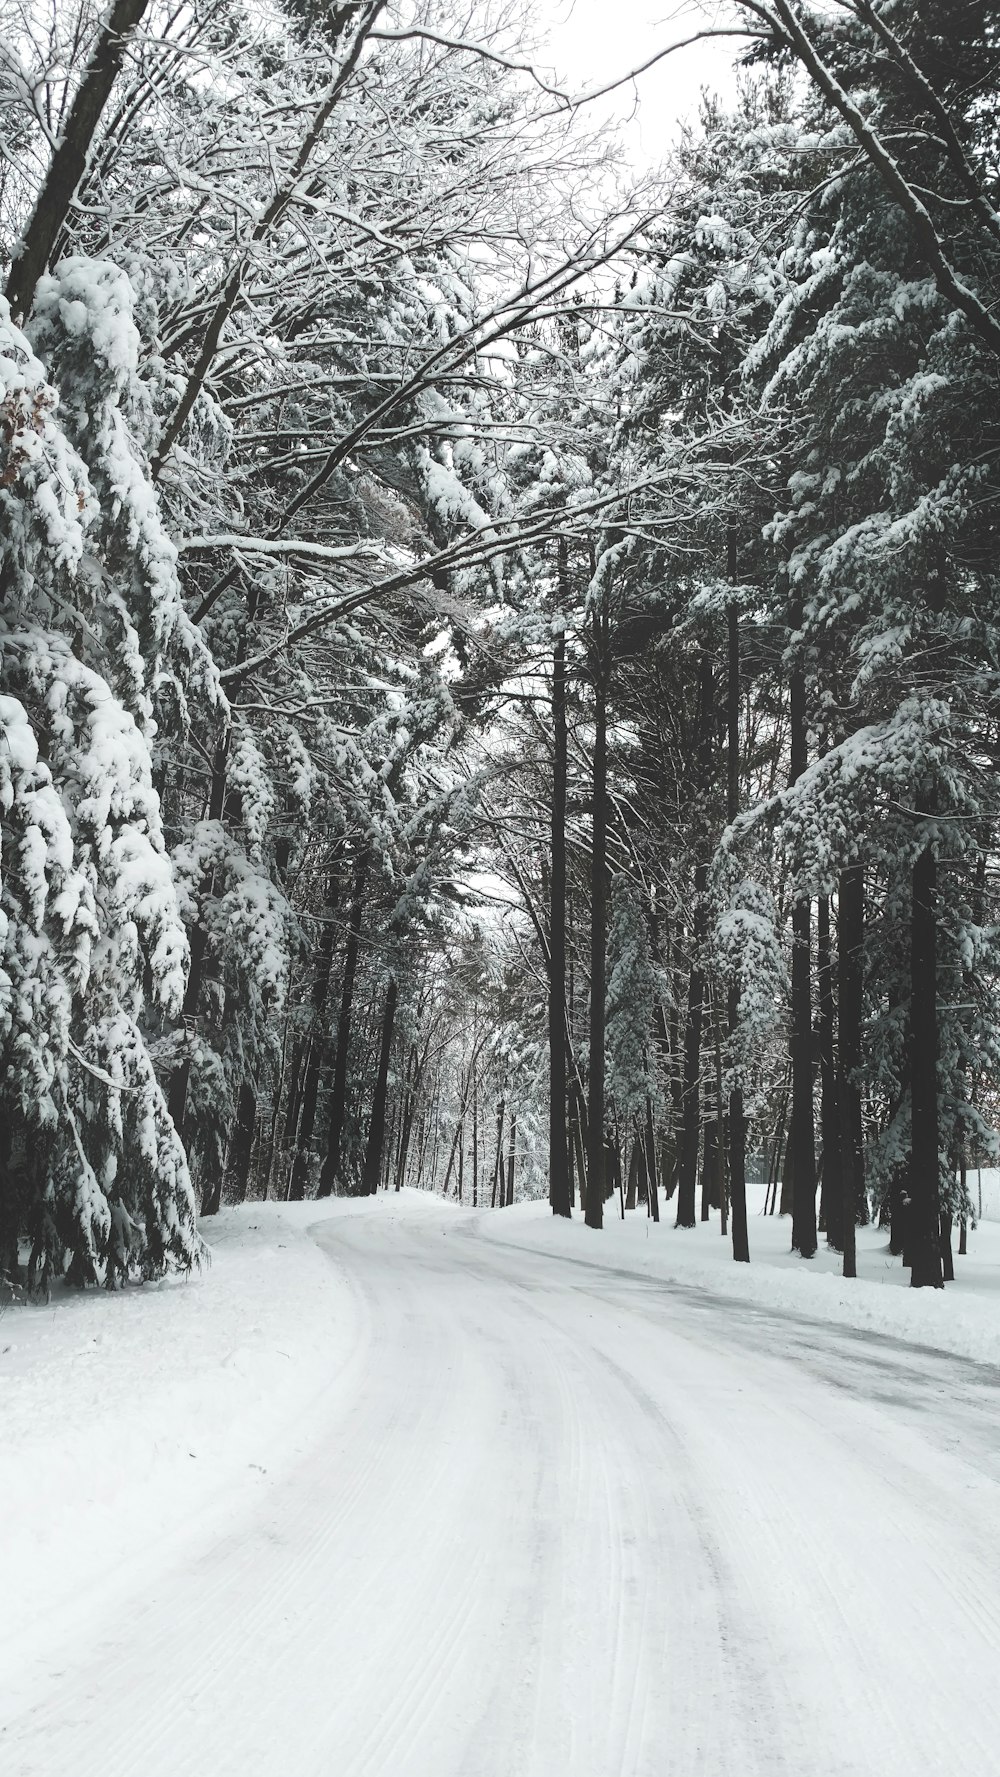 carretera rodeada de árboles durante el invierno